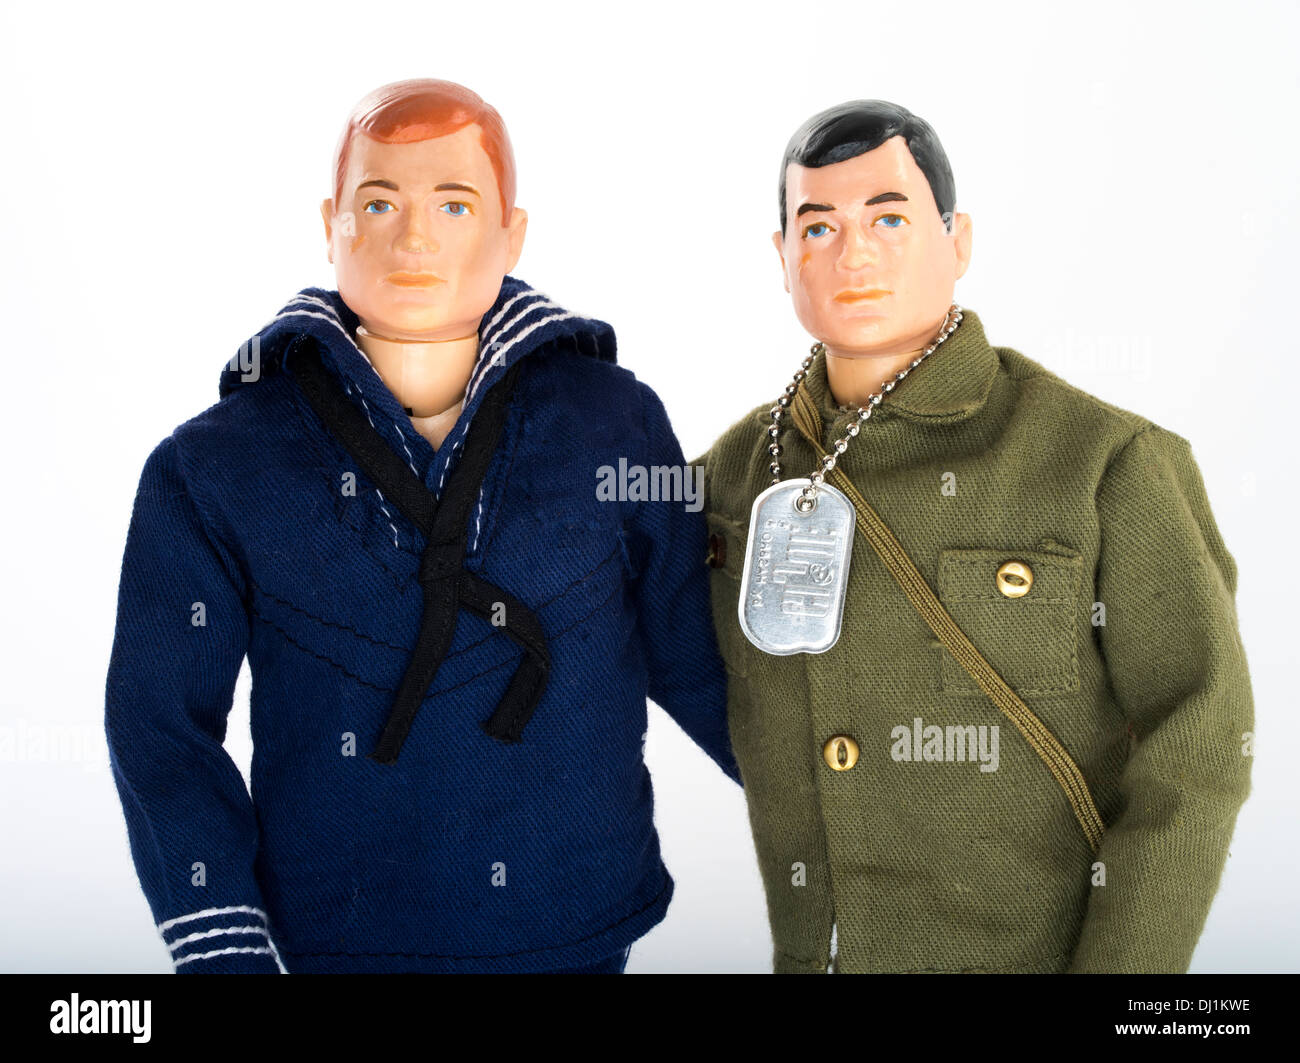 1964 GI Joe Action Figures par compagnie de jouets Hasbro. Forces armées des États-Unis l'Armée bleu marine avec G.I. Banque D'Images